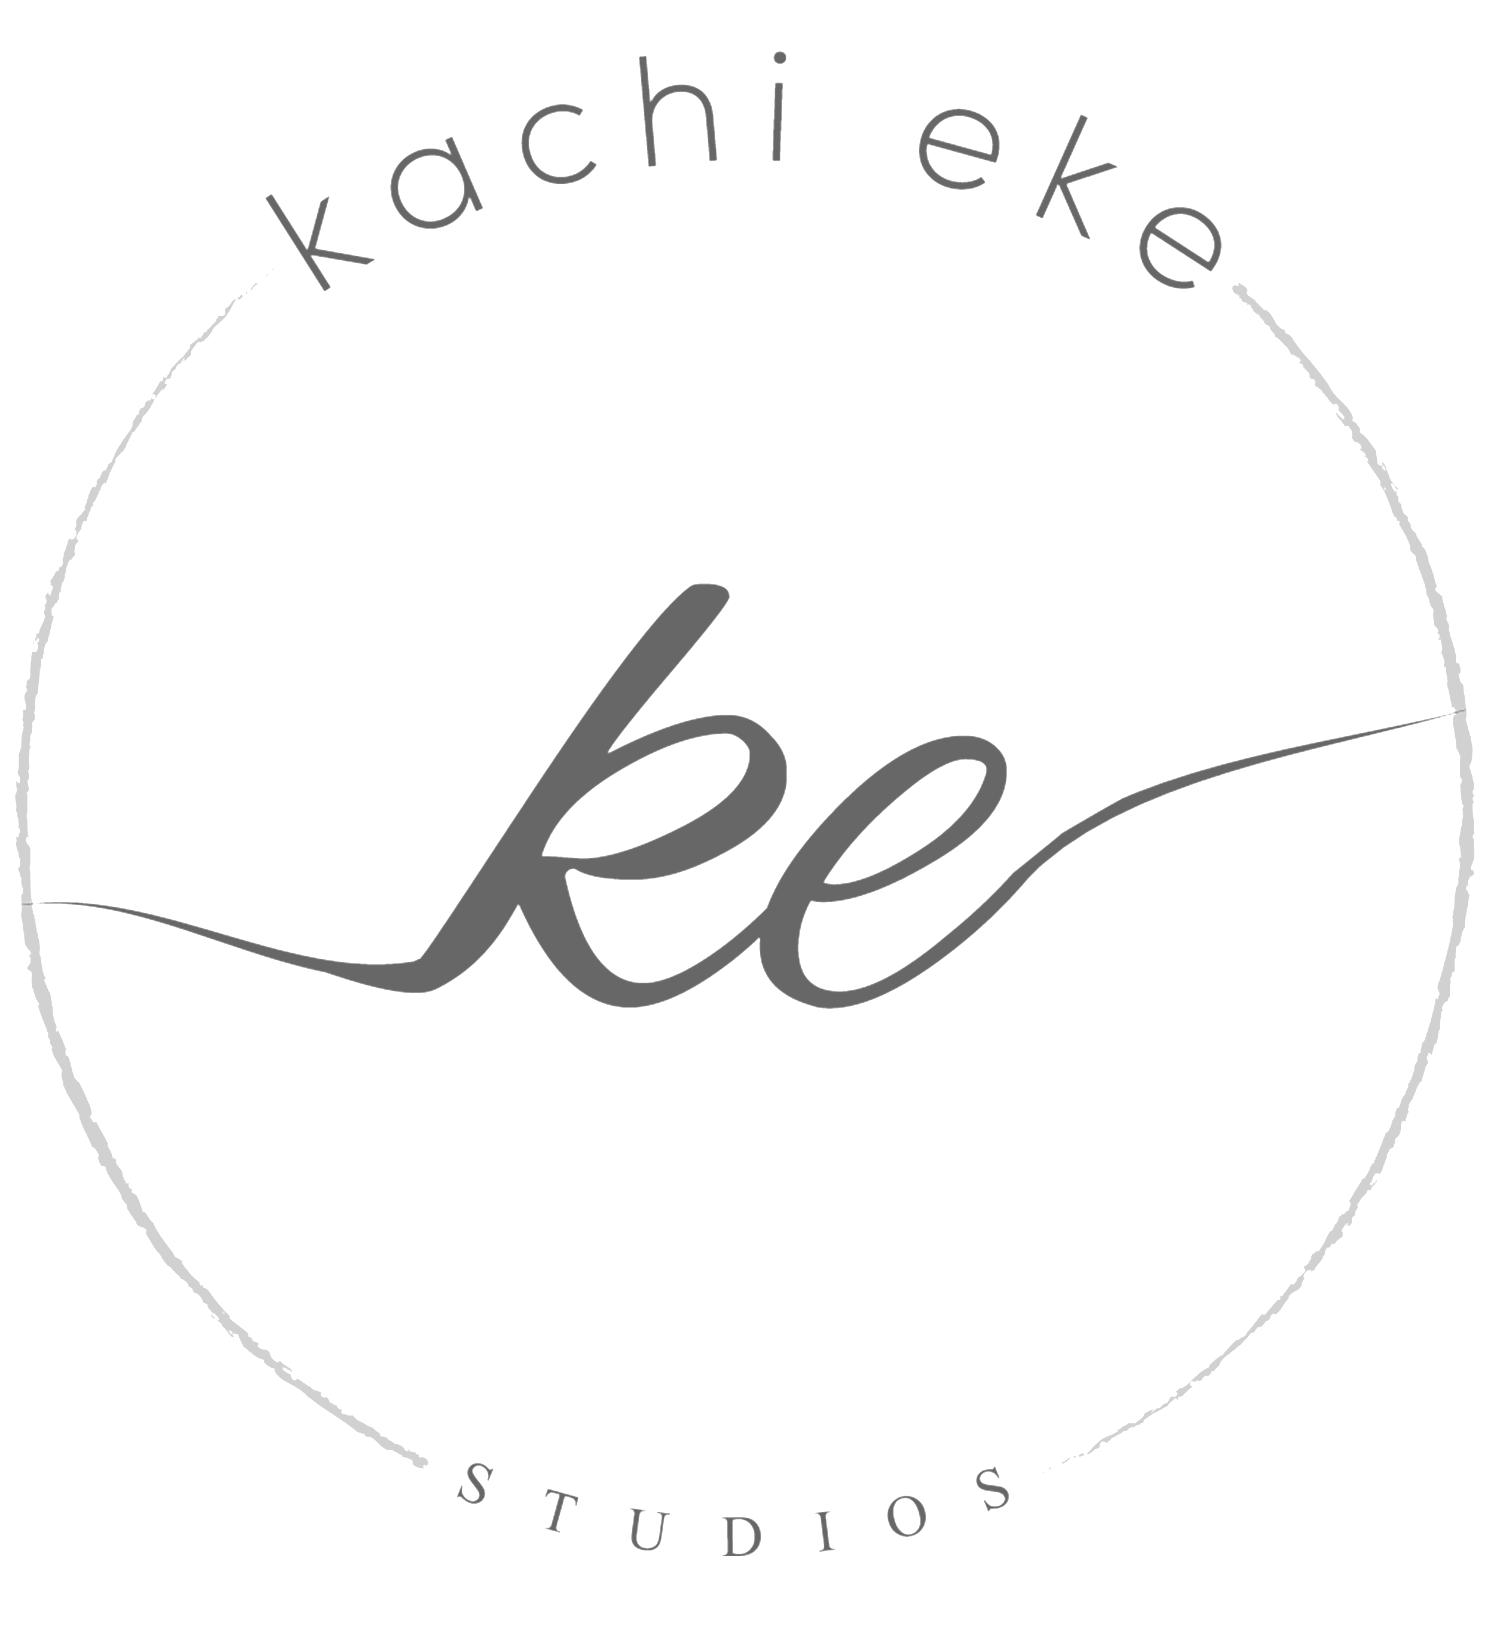 Kachi Eke